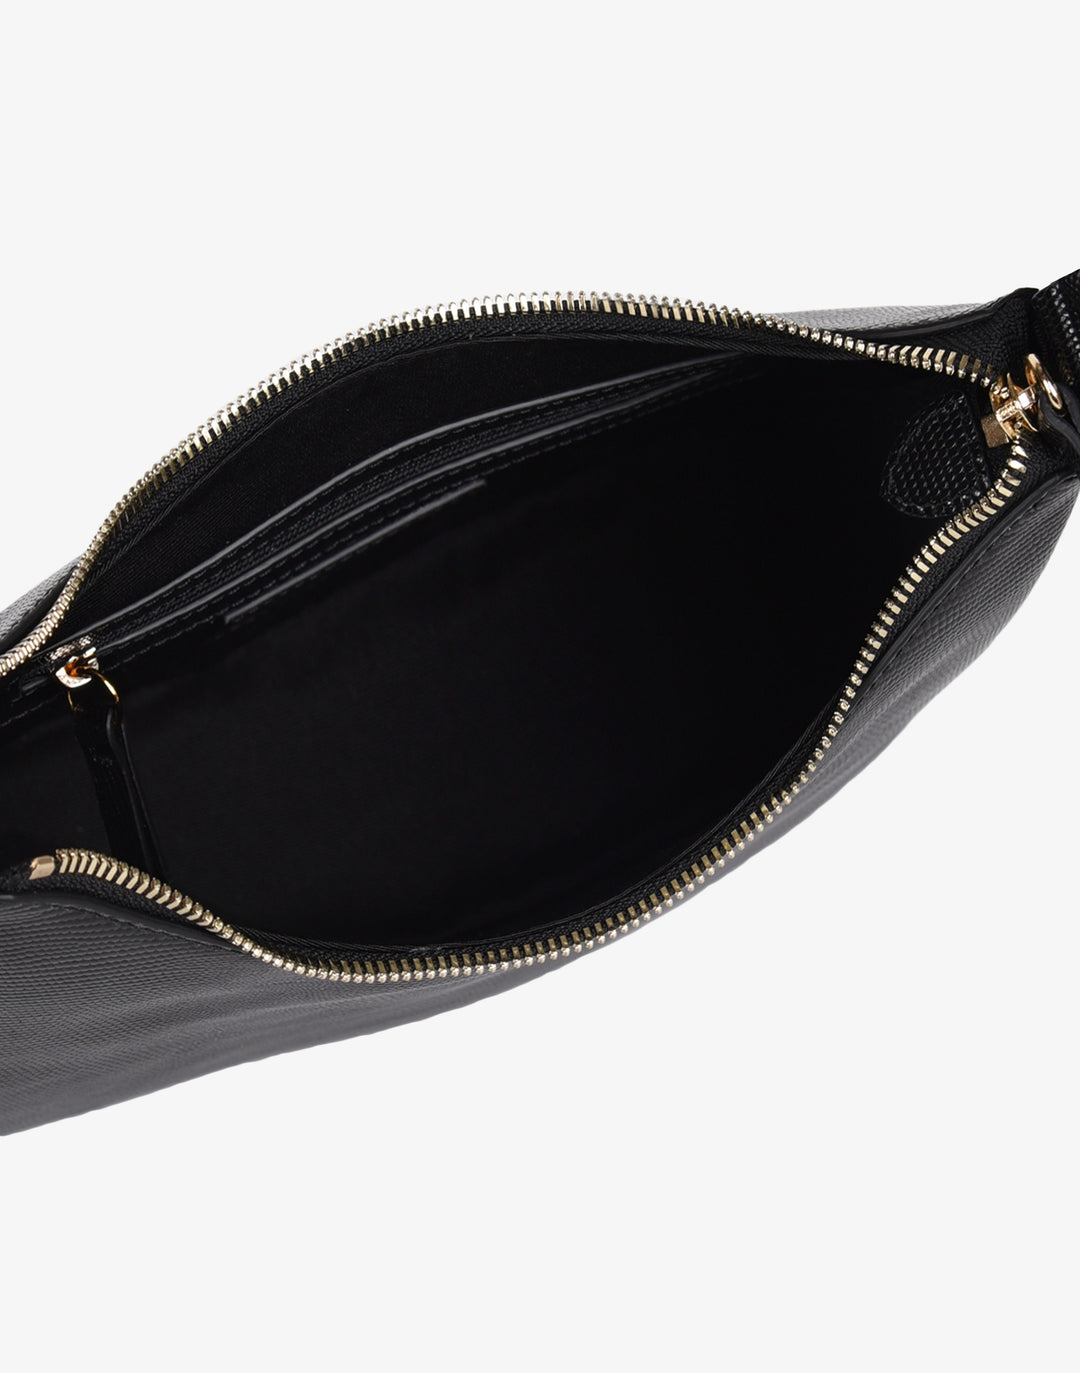 Hudson Hobo (Port)- Designer leather Handbags